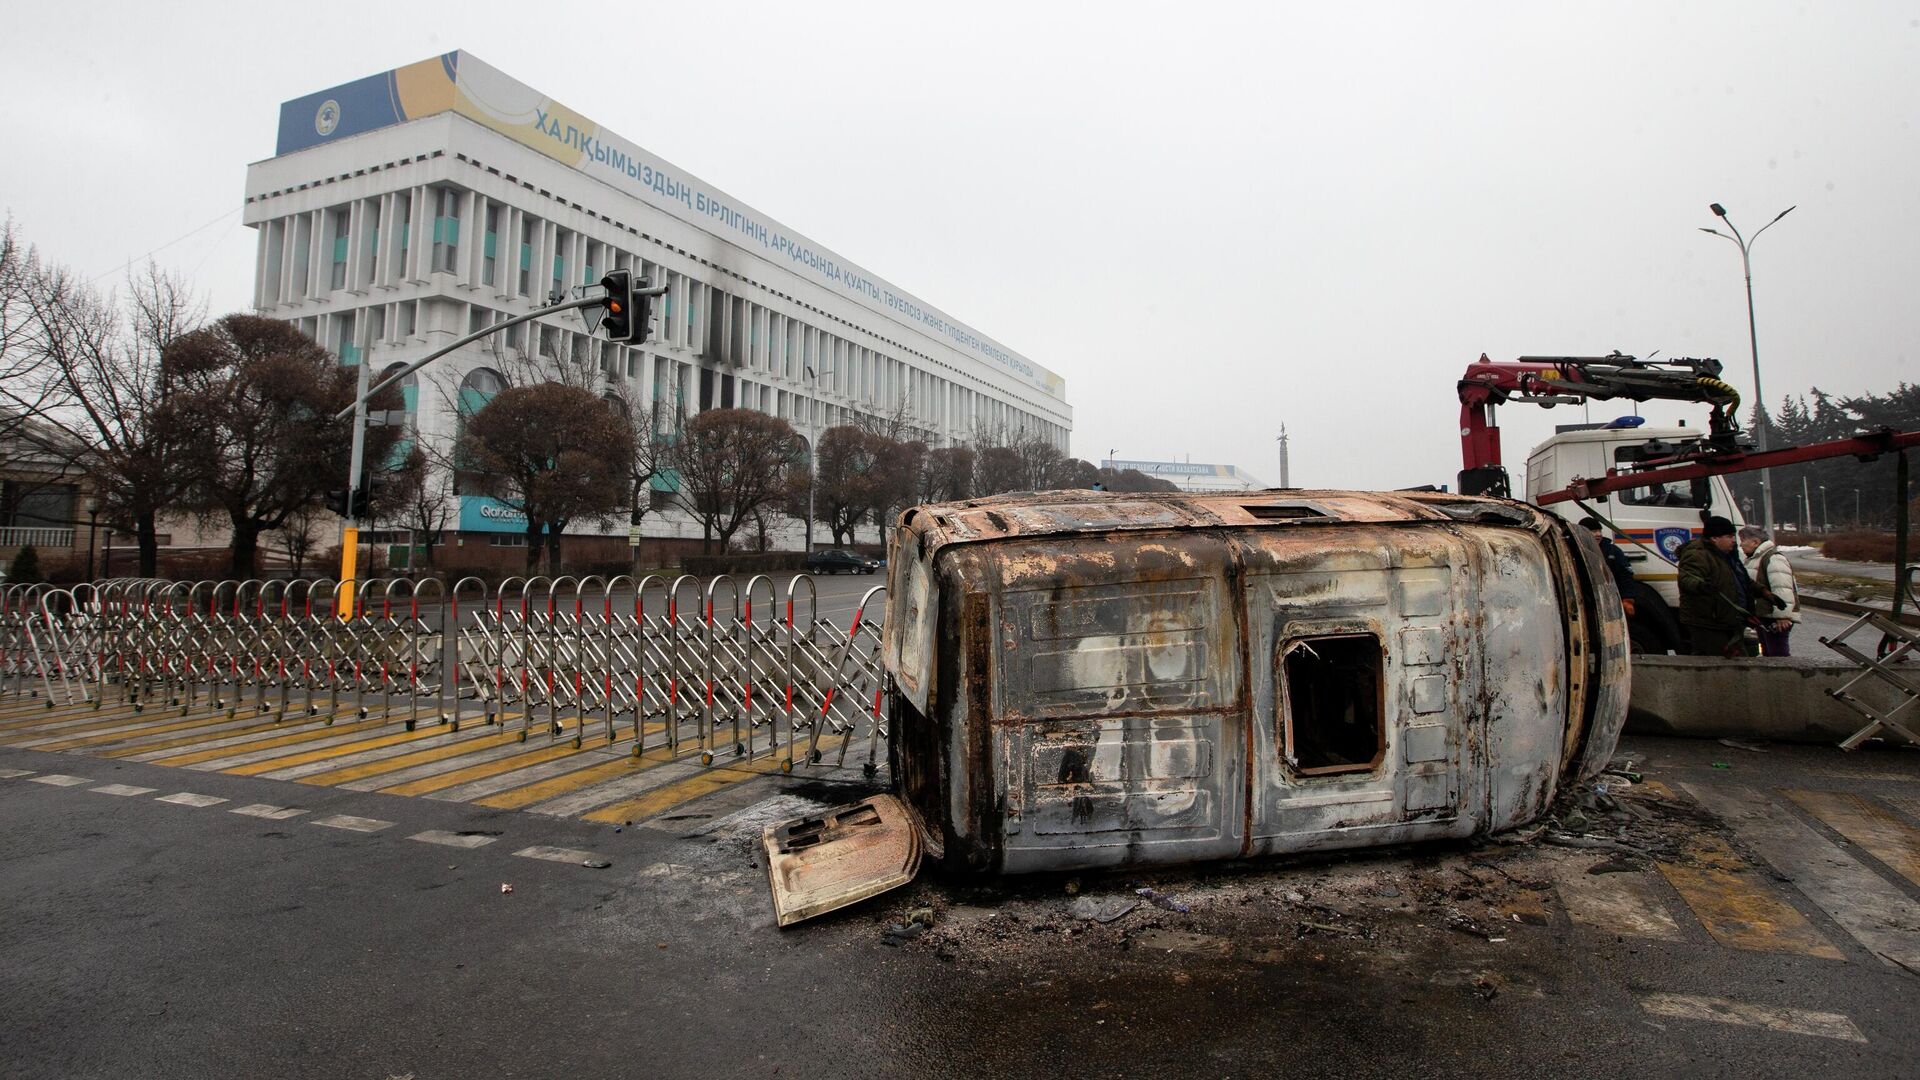 Сгоревший во время протестов автомобиль на улице в Алматы, Казахстан, 7 января 2022 года - Sputnik Азербайджан, 1920, 19.01.2022